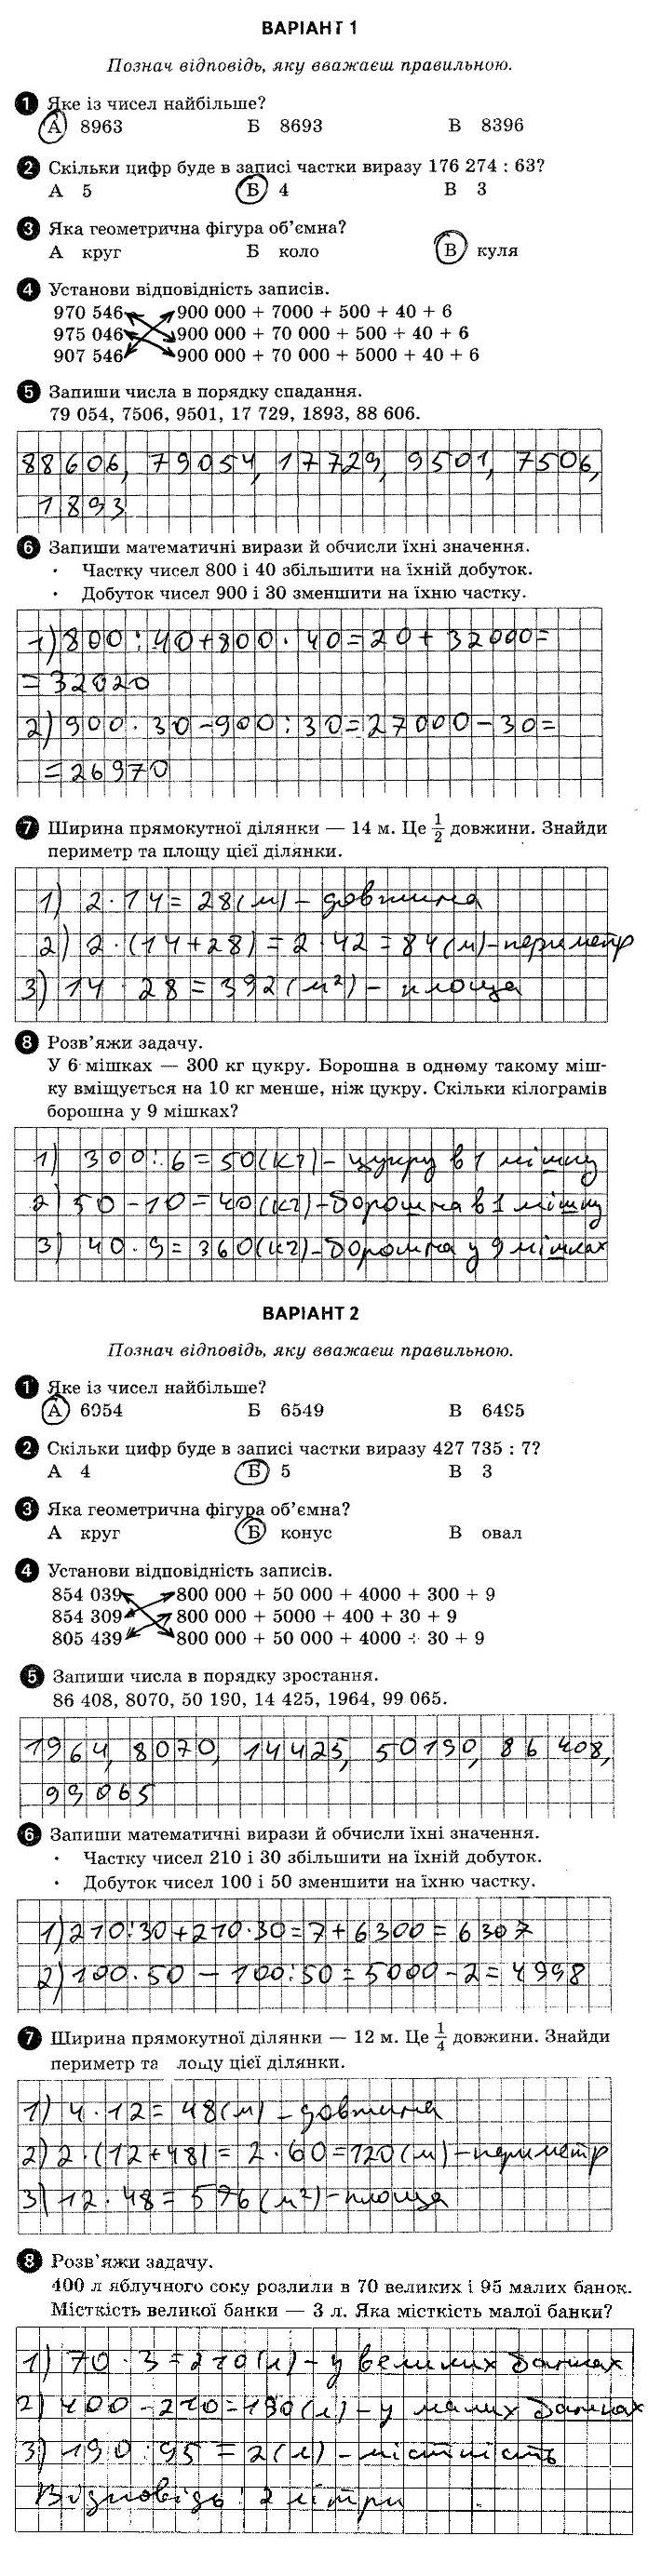 ГДЗ (відповіді) Тестова контрольна робота 6 4 клас ДПА-2019 Математика Шевченко (підсумкові контрольні роботи)